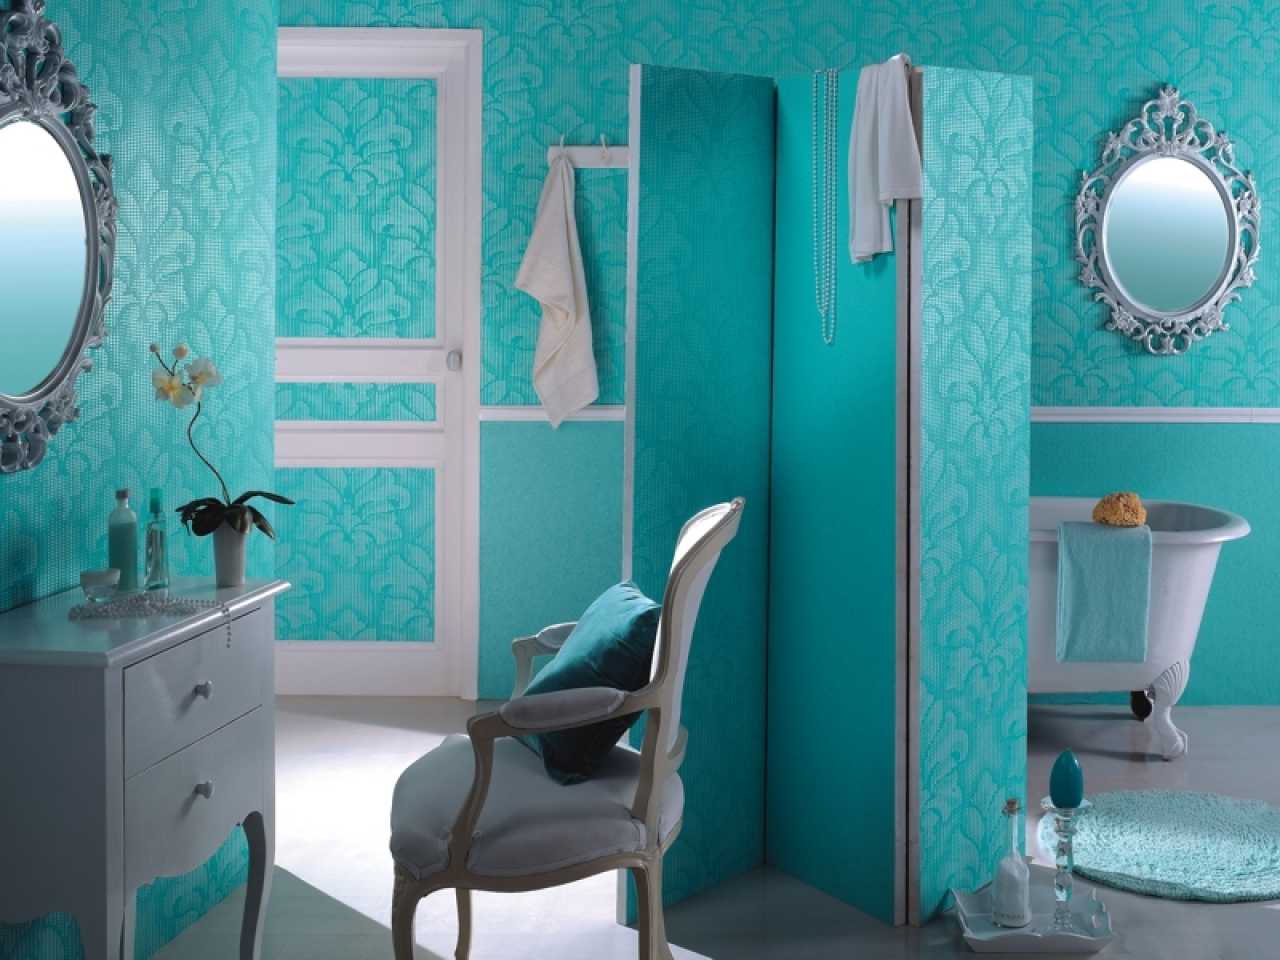 Стеклообои в ванной (50 фото): отзывы об отделке стен комнаты стекловолокнистыми обоями, какие подойдут для ремонта